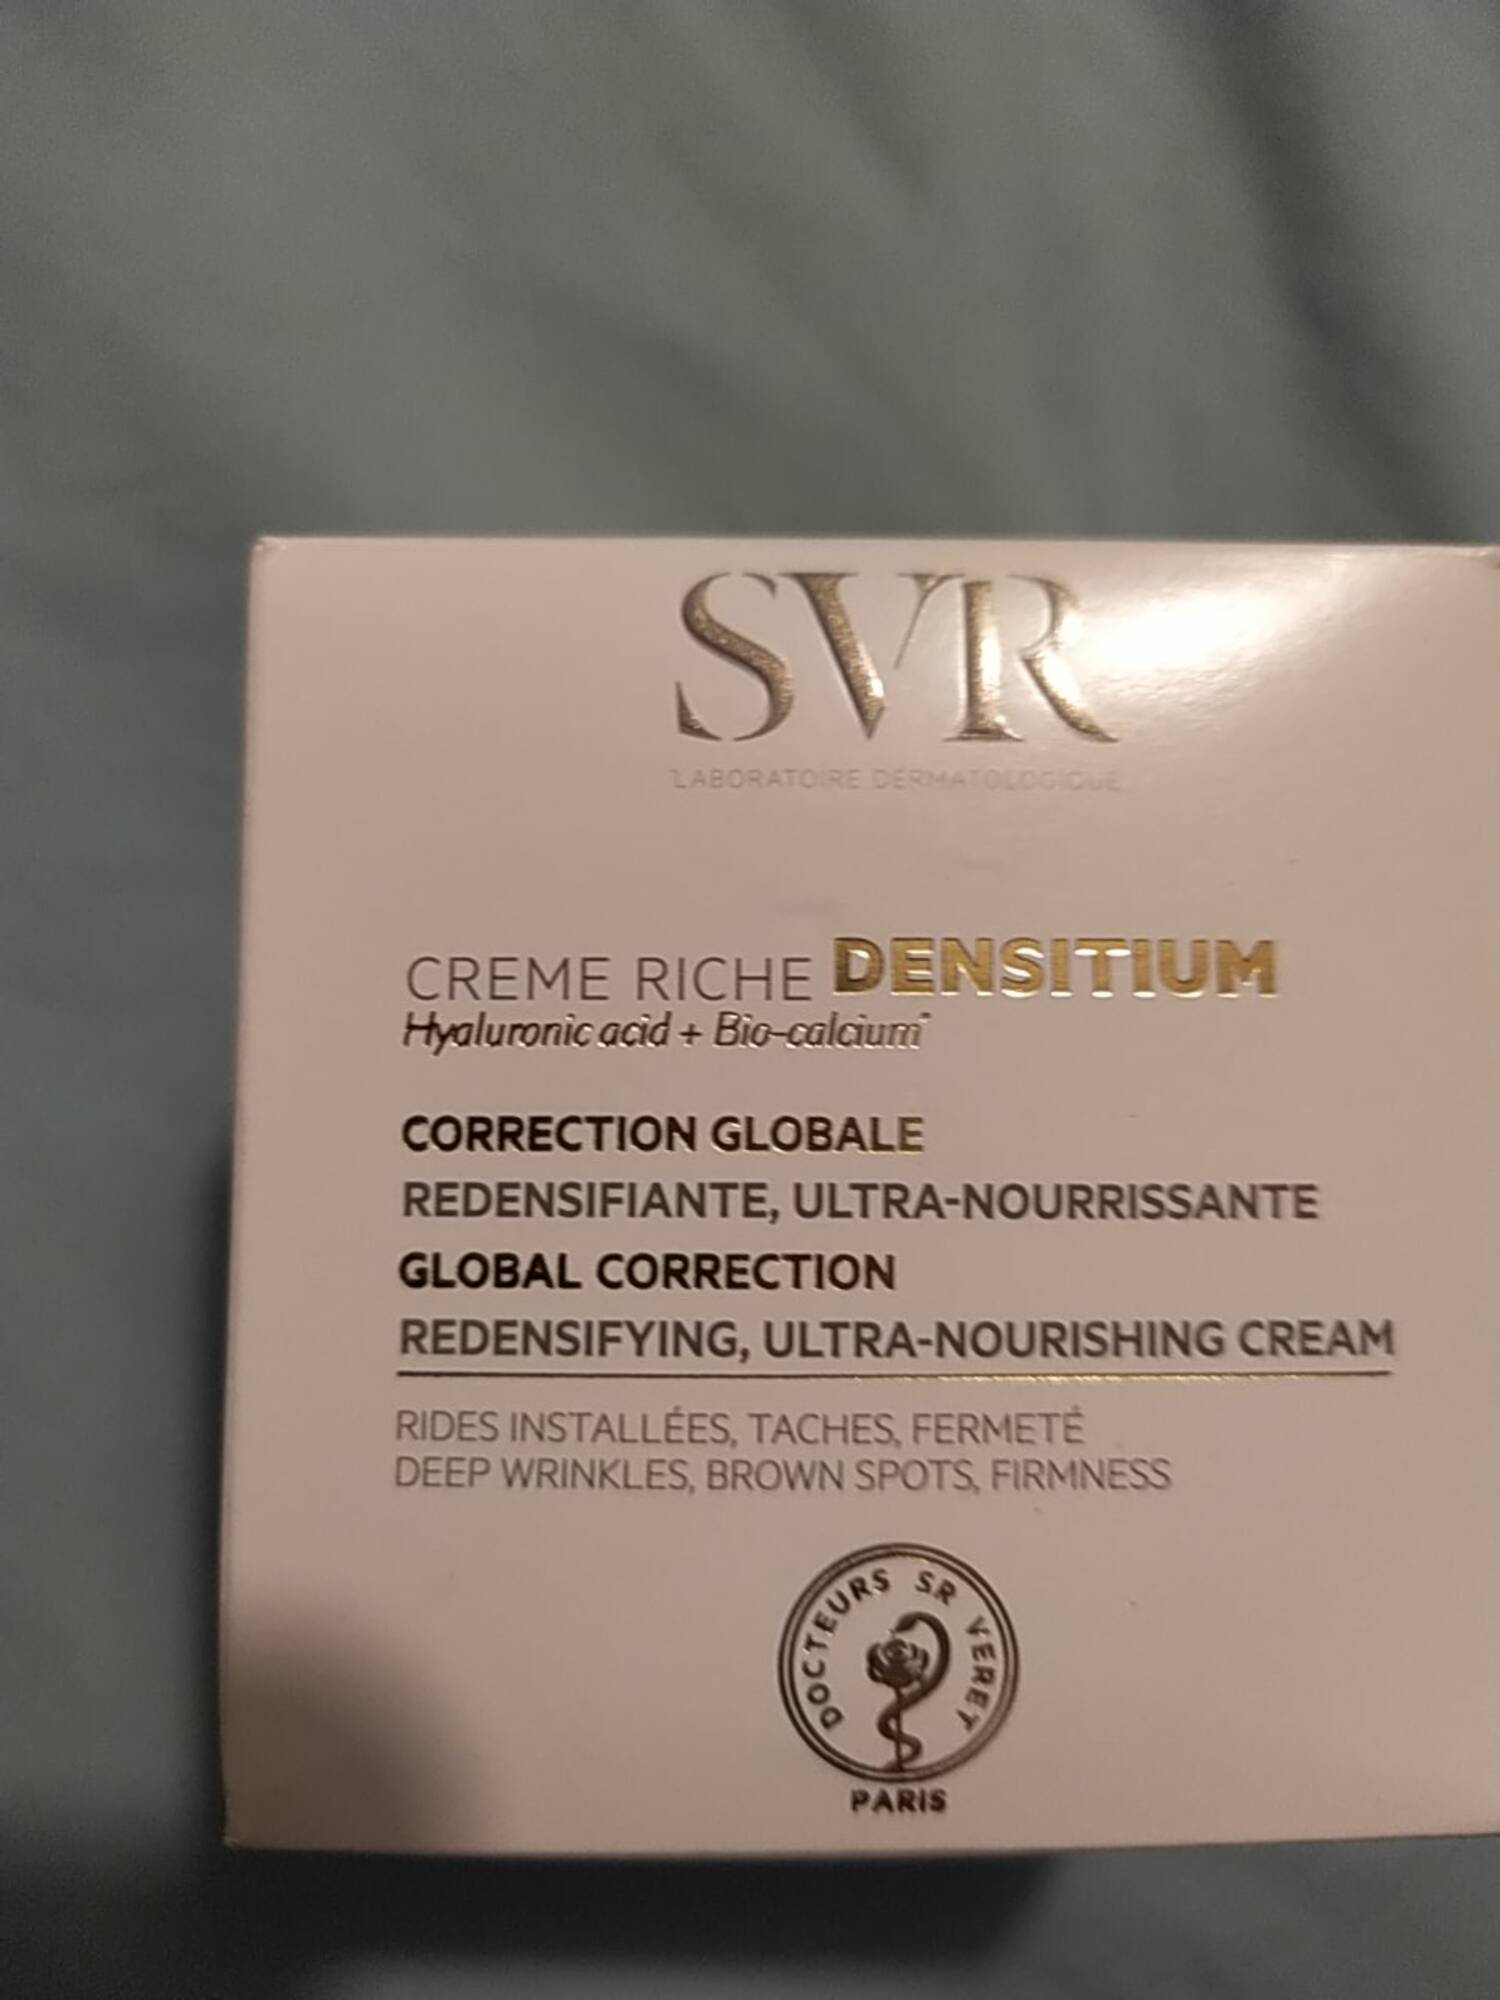 SVR - Crème riche densitium - Correction globale